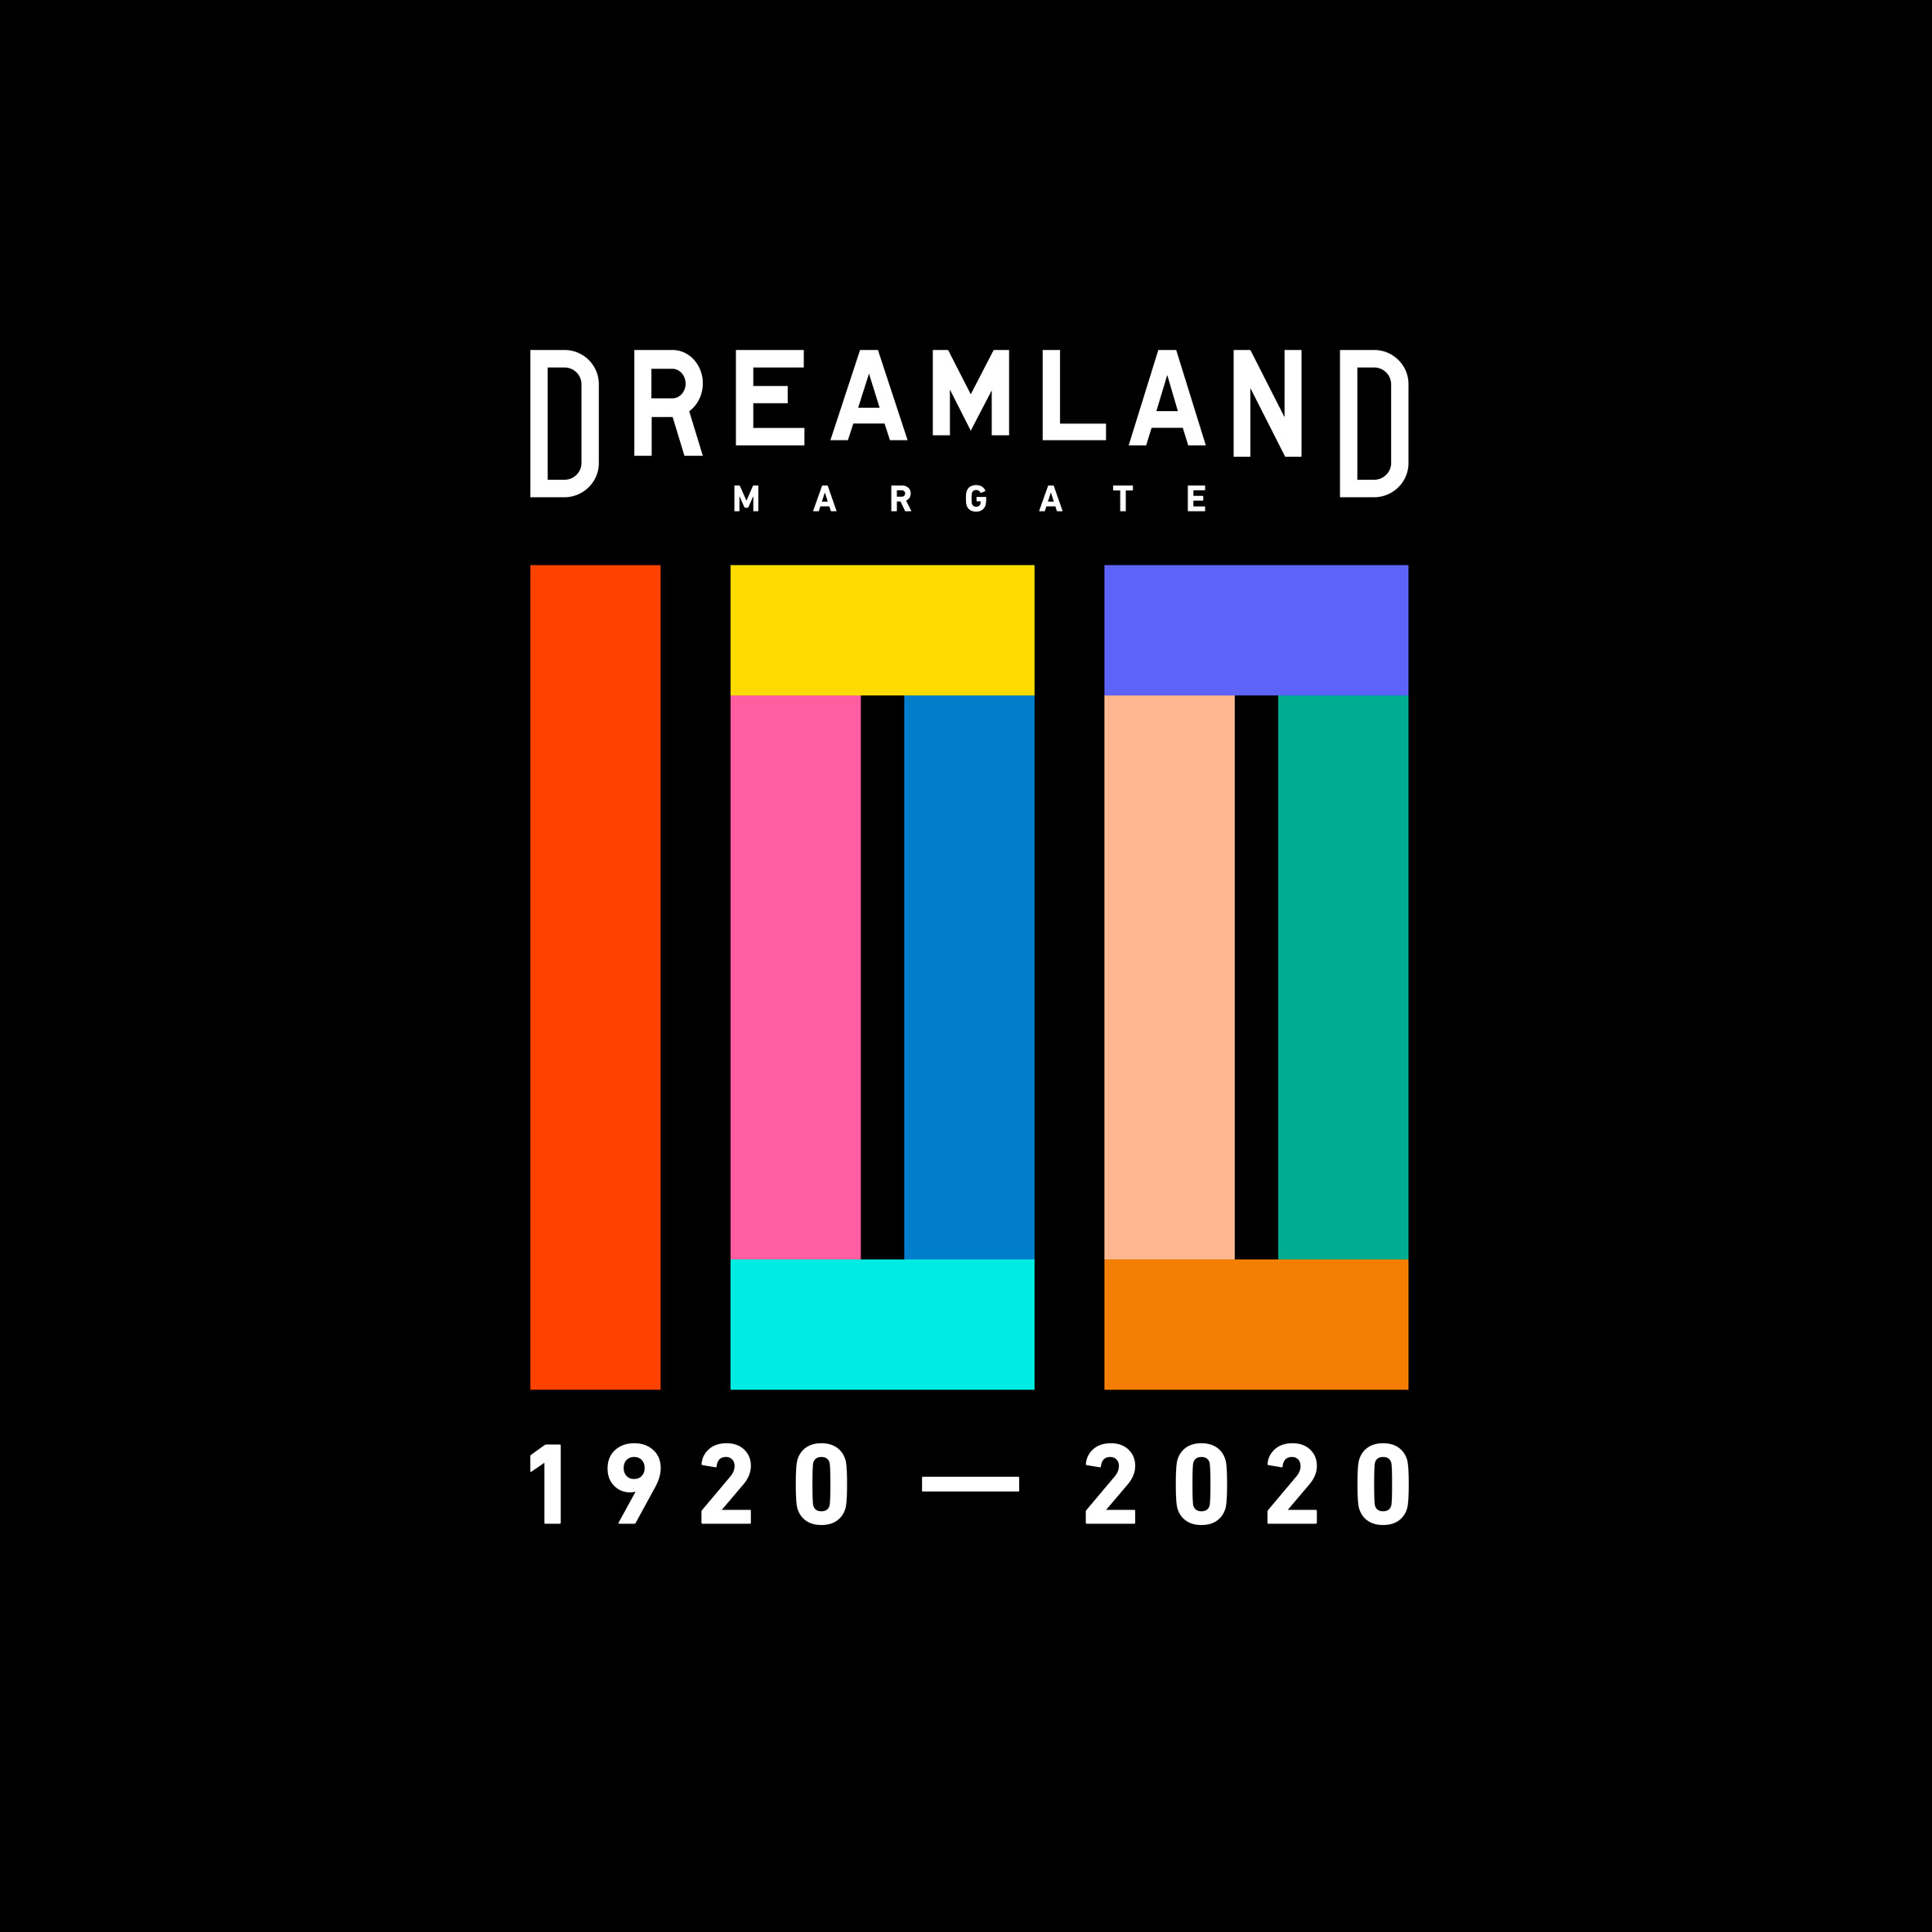 Dreamland 100th Anniversary logo by HemingwayDesign